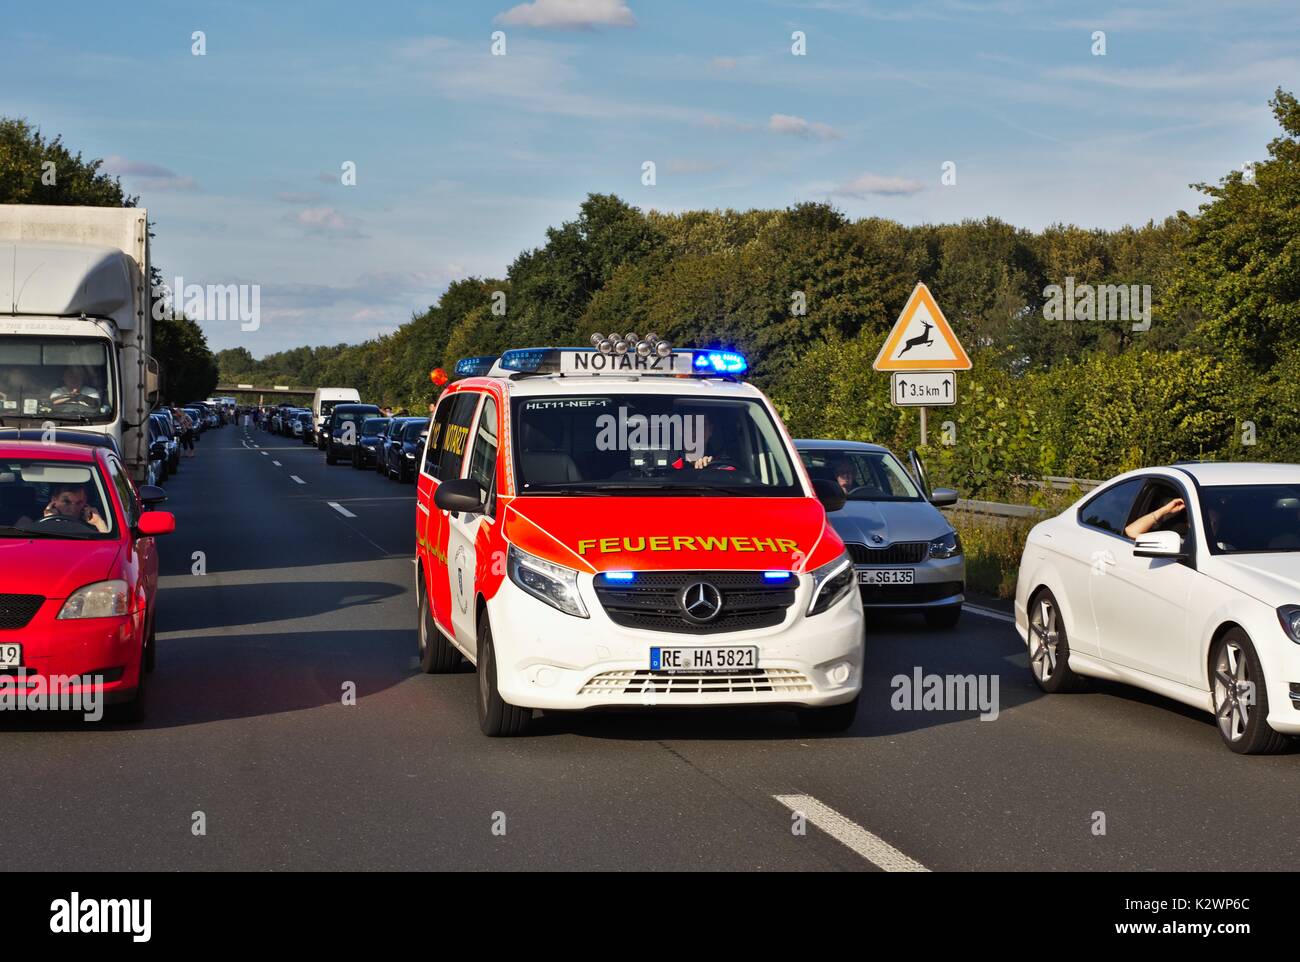 Voitures sur autoroute allemande laissant un passage pour les véhicules d'urgence Banque D'Images